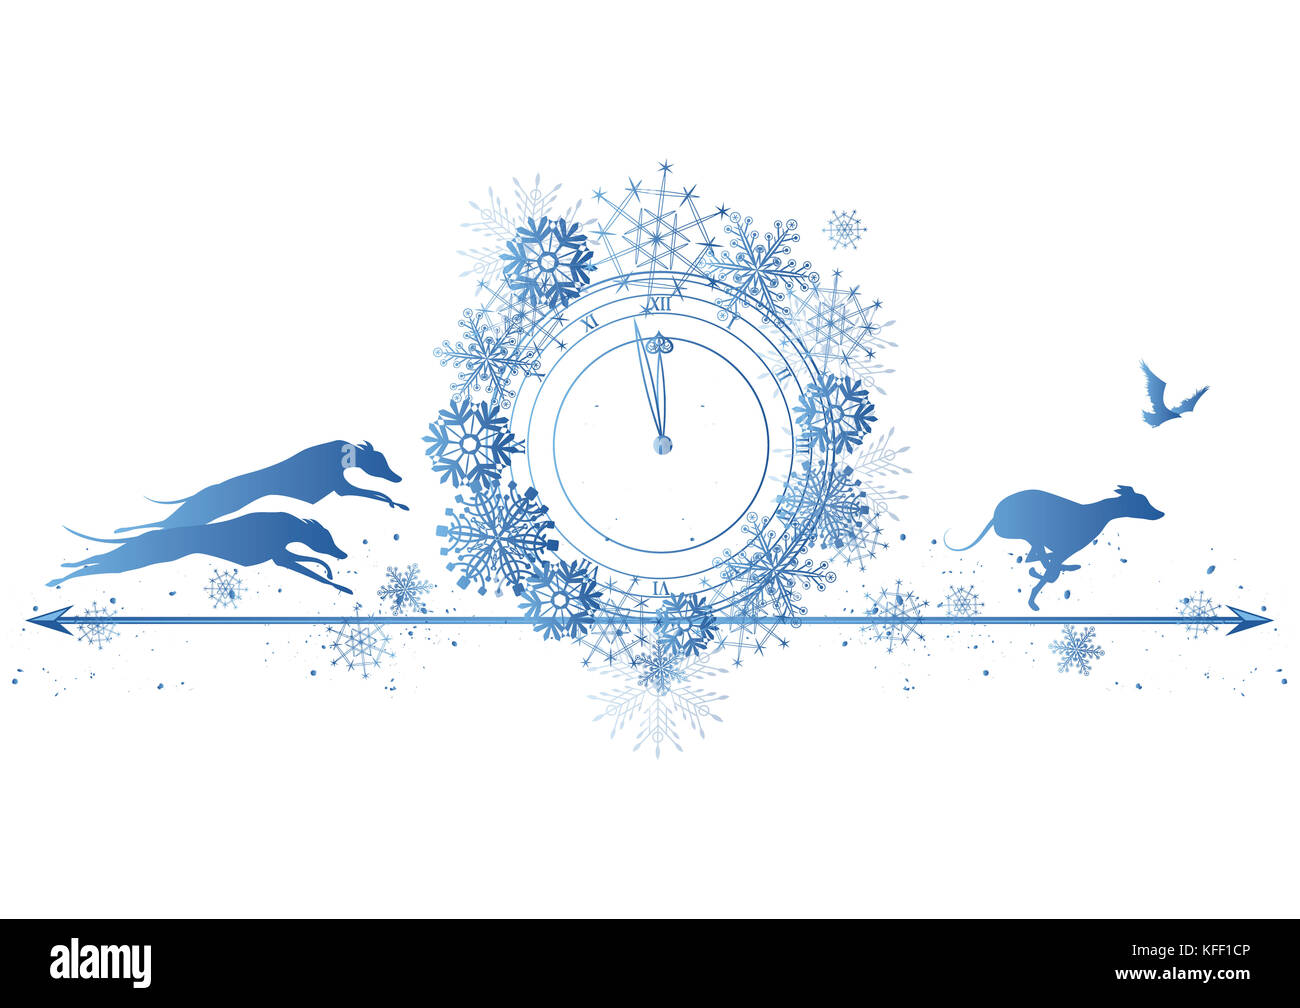 Neues Jahr Grenze mit Hunden, Raven und Uhr in blauen Farben Stockfoto